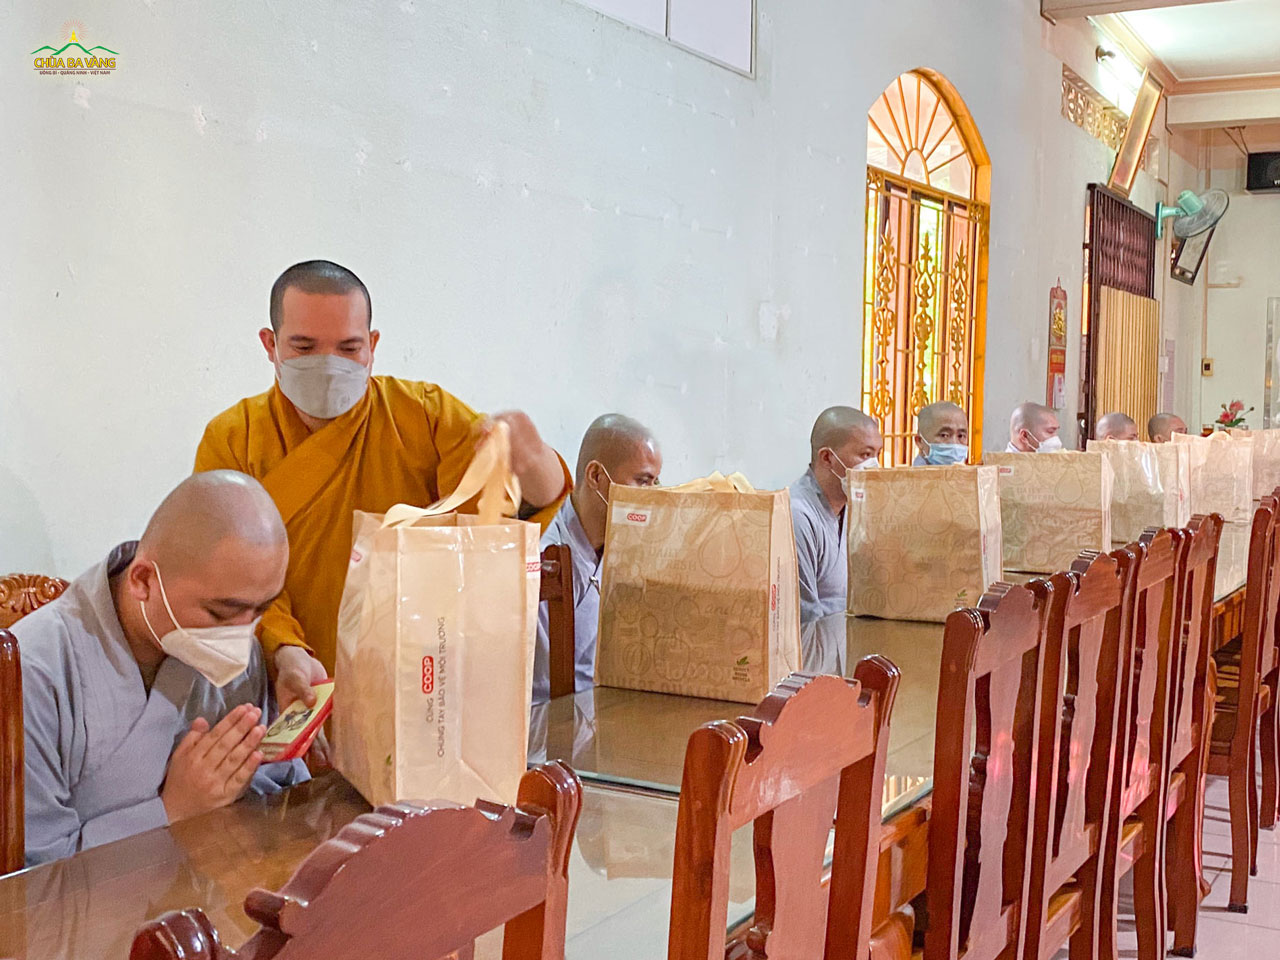 Thầy Thích Nhuận Hòa thay mặt chùa Ba Vàng cúng dường tịnh tài và phẩm vật tới 18 vị Tăng sinh nội trú đang tu học tại Phật học đường Lưỡng Xuyên  